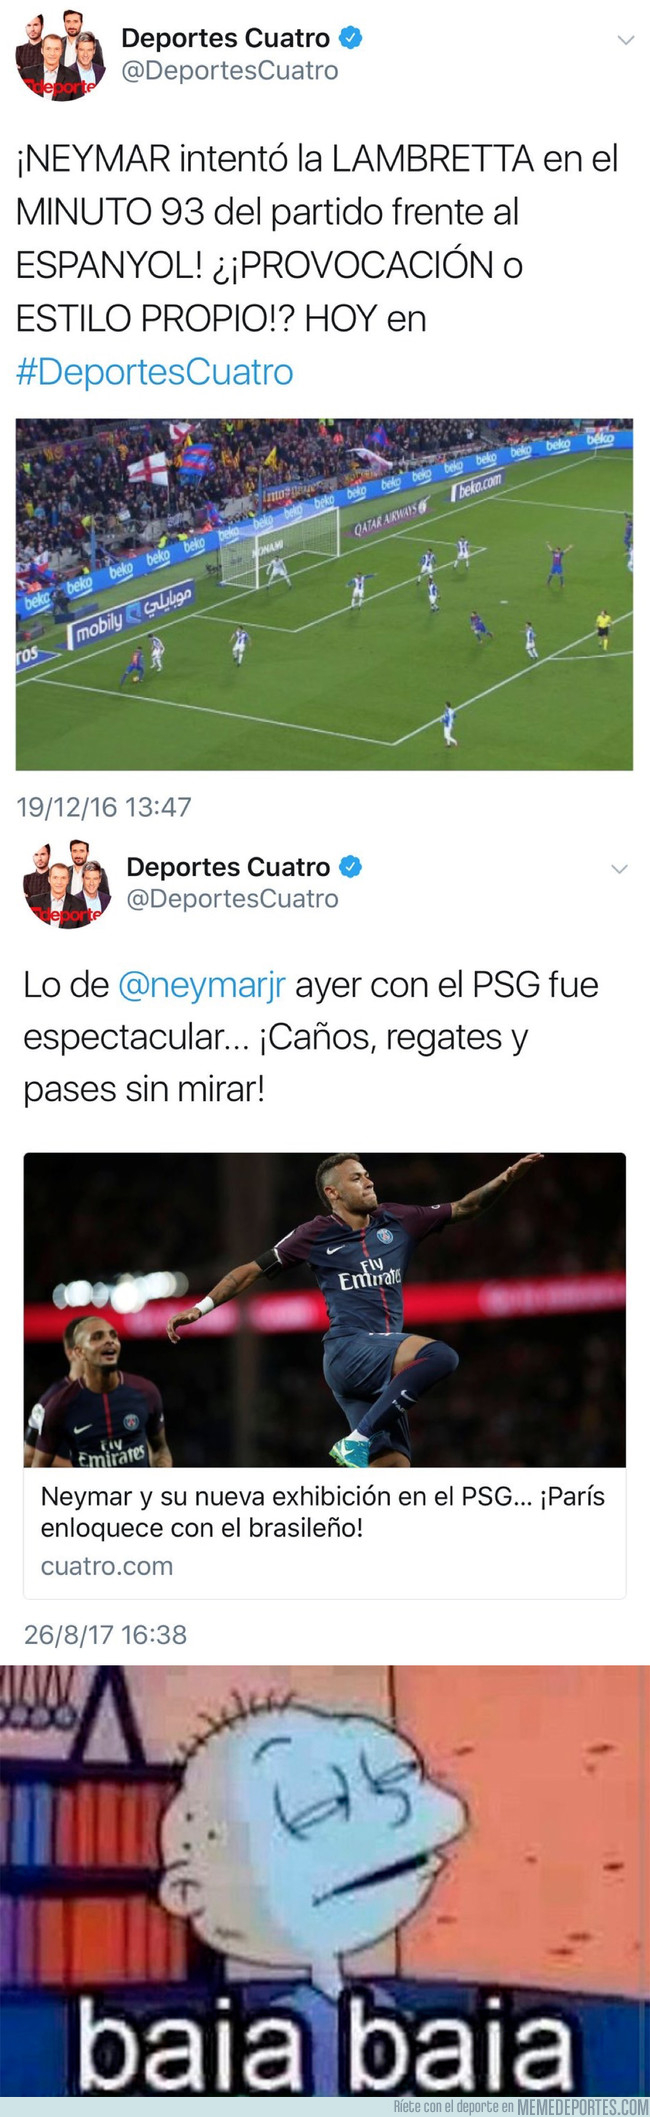 995790 - El doble rasero de 'Deportes Cuatro' analizando jugadas de Neymar en el Barça y en el PSG